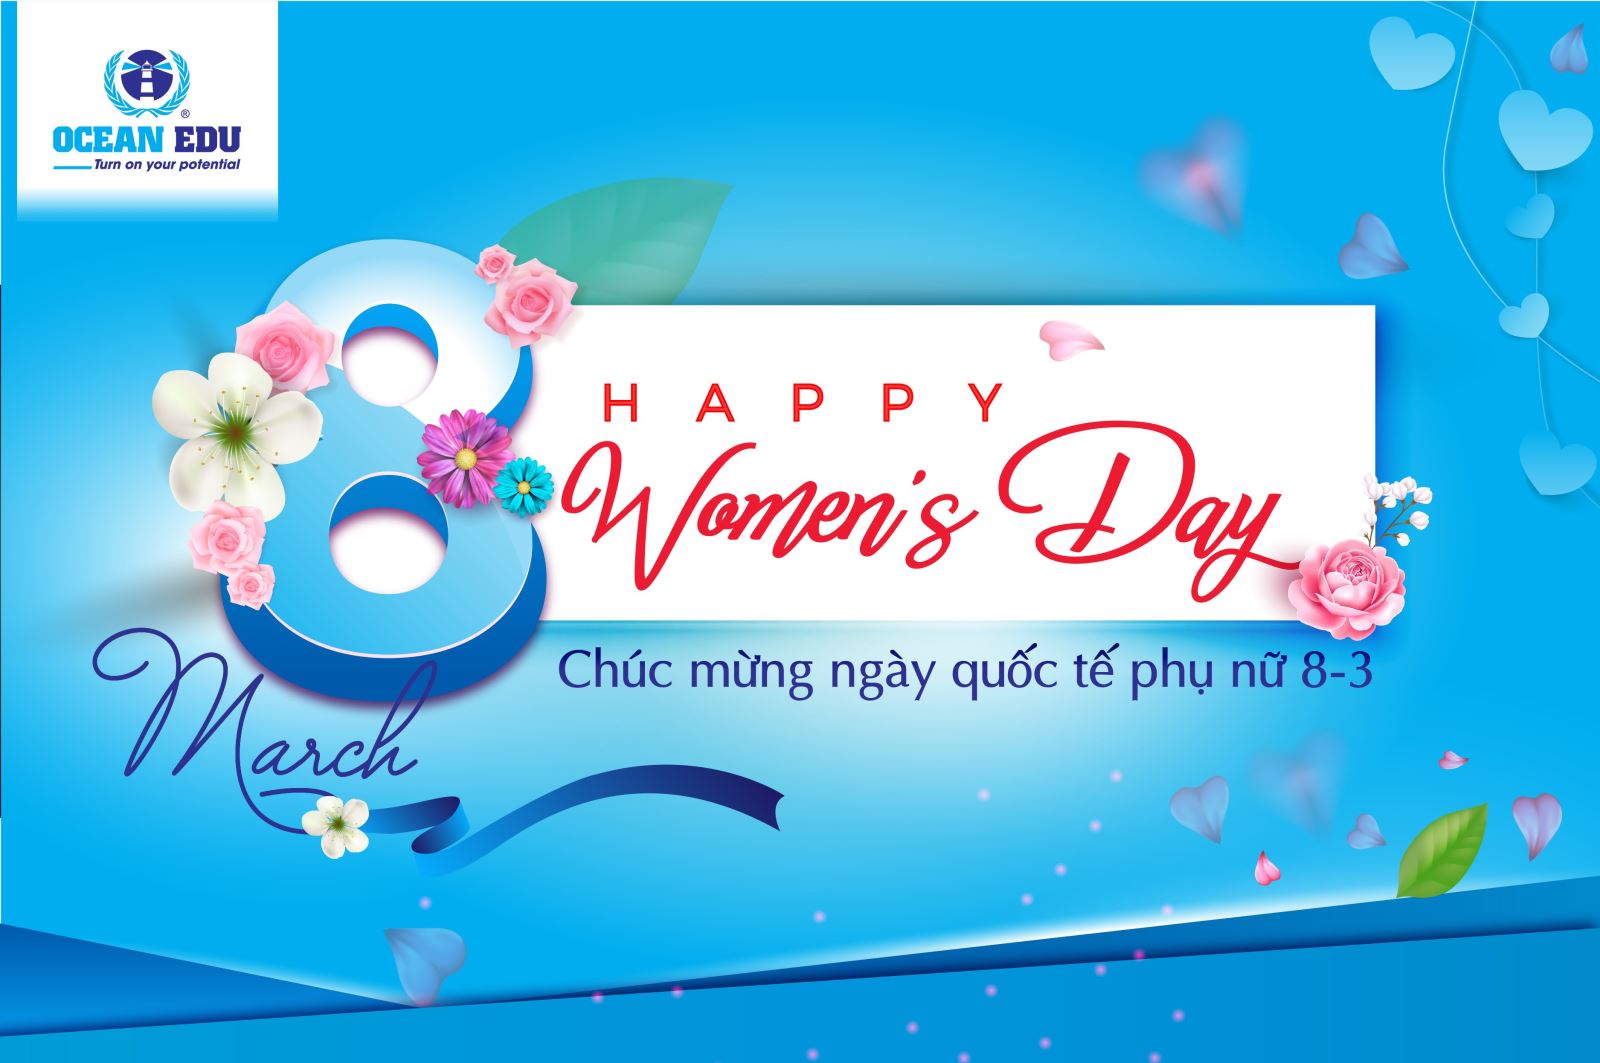 Ngày Quốc tế Phụ nữ: Hãy cùng tôi chào đón ngày Quốc tế Phụ nữ với những câu chúc tốt đẹp, sâu sắc và ý nghĩa nhất dành cho những người phụ nữ trên thế giới này. Cùng thể hiện tình cảm và trân trọng đến giới phụ nữ, mang lại niềm vui và động lực cho cuộc sống của họ.